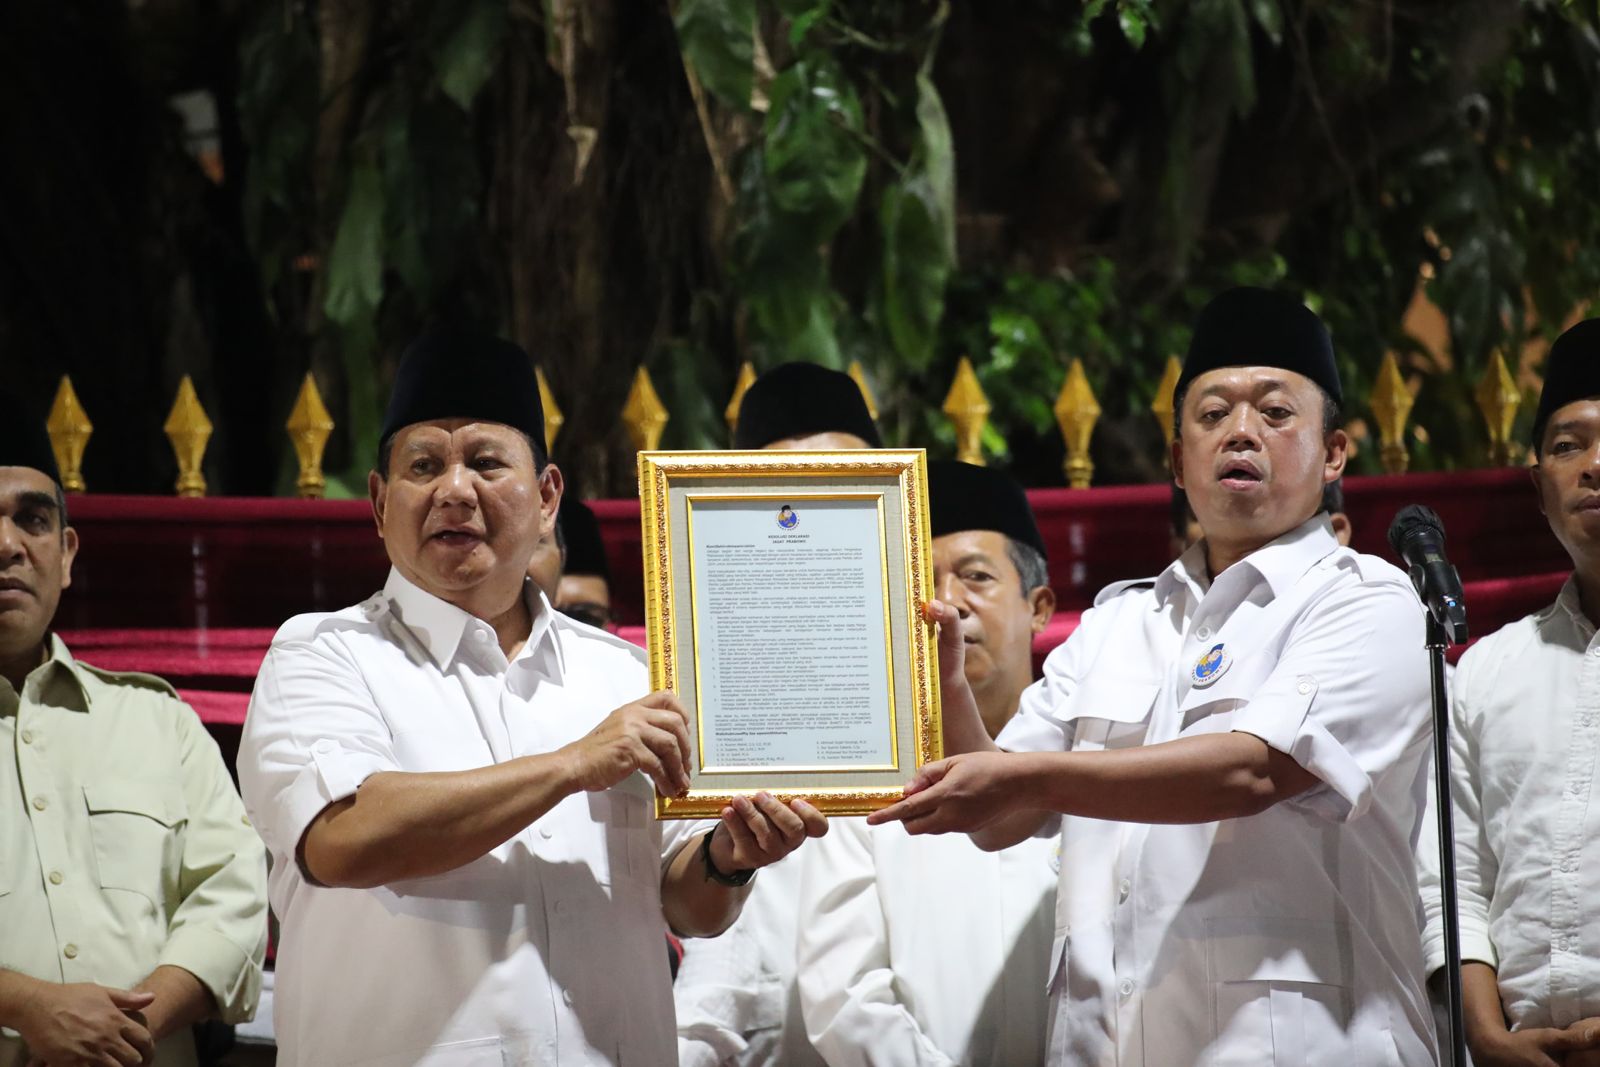 Semua Anak Indonesia Harus Mendapatkan Asupan Gizi yang Memadai menurut Prabowo